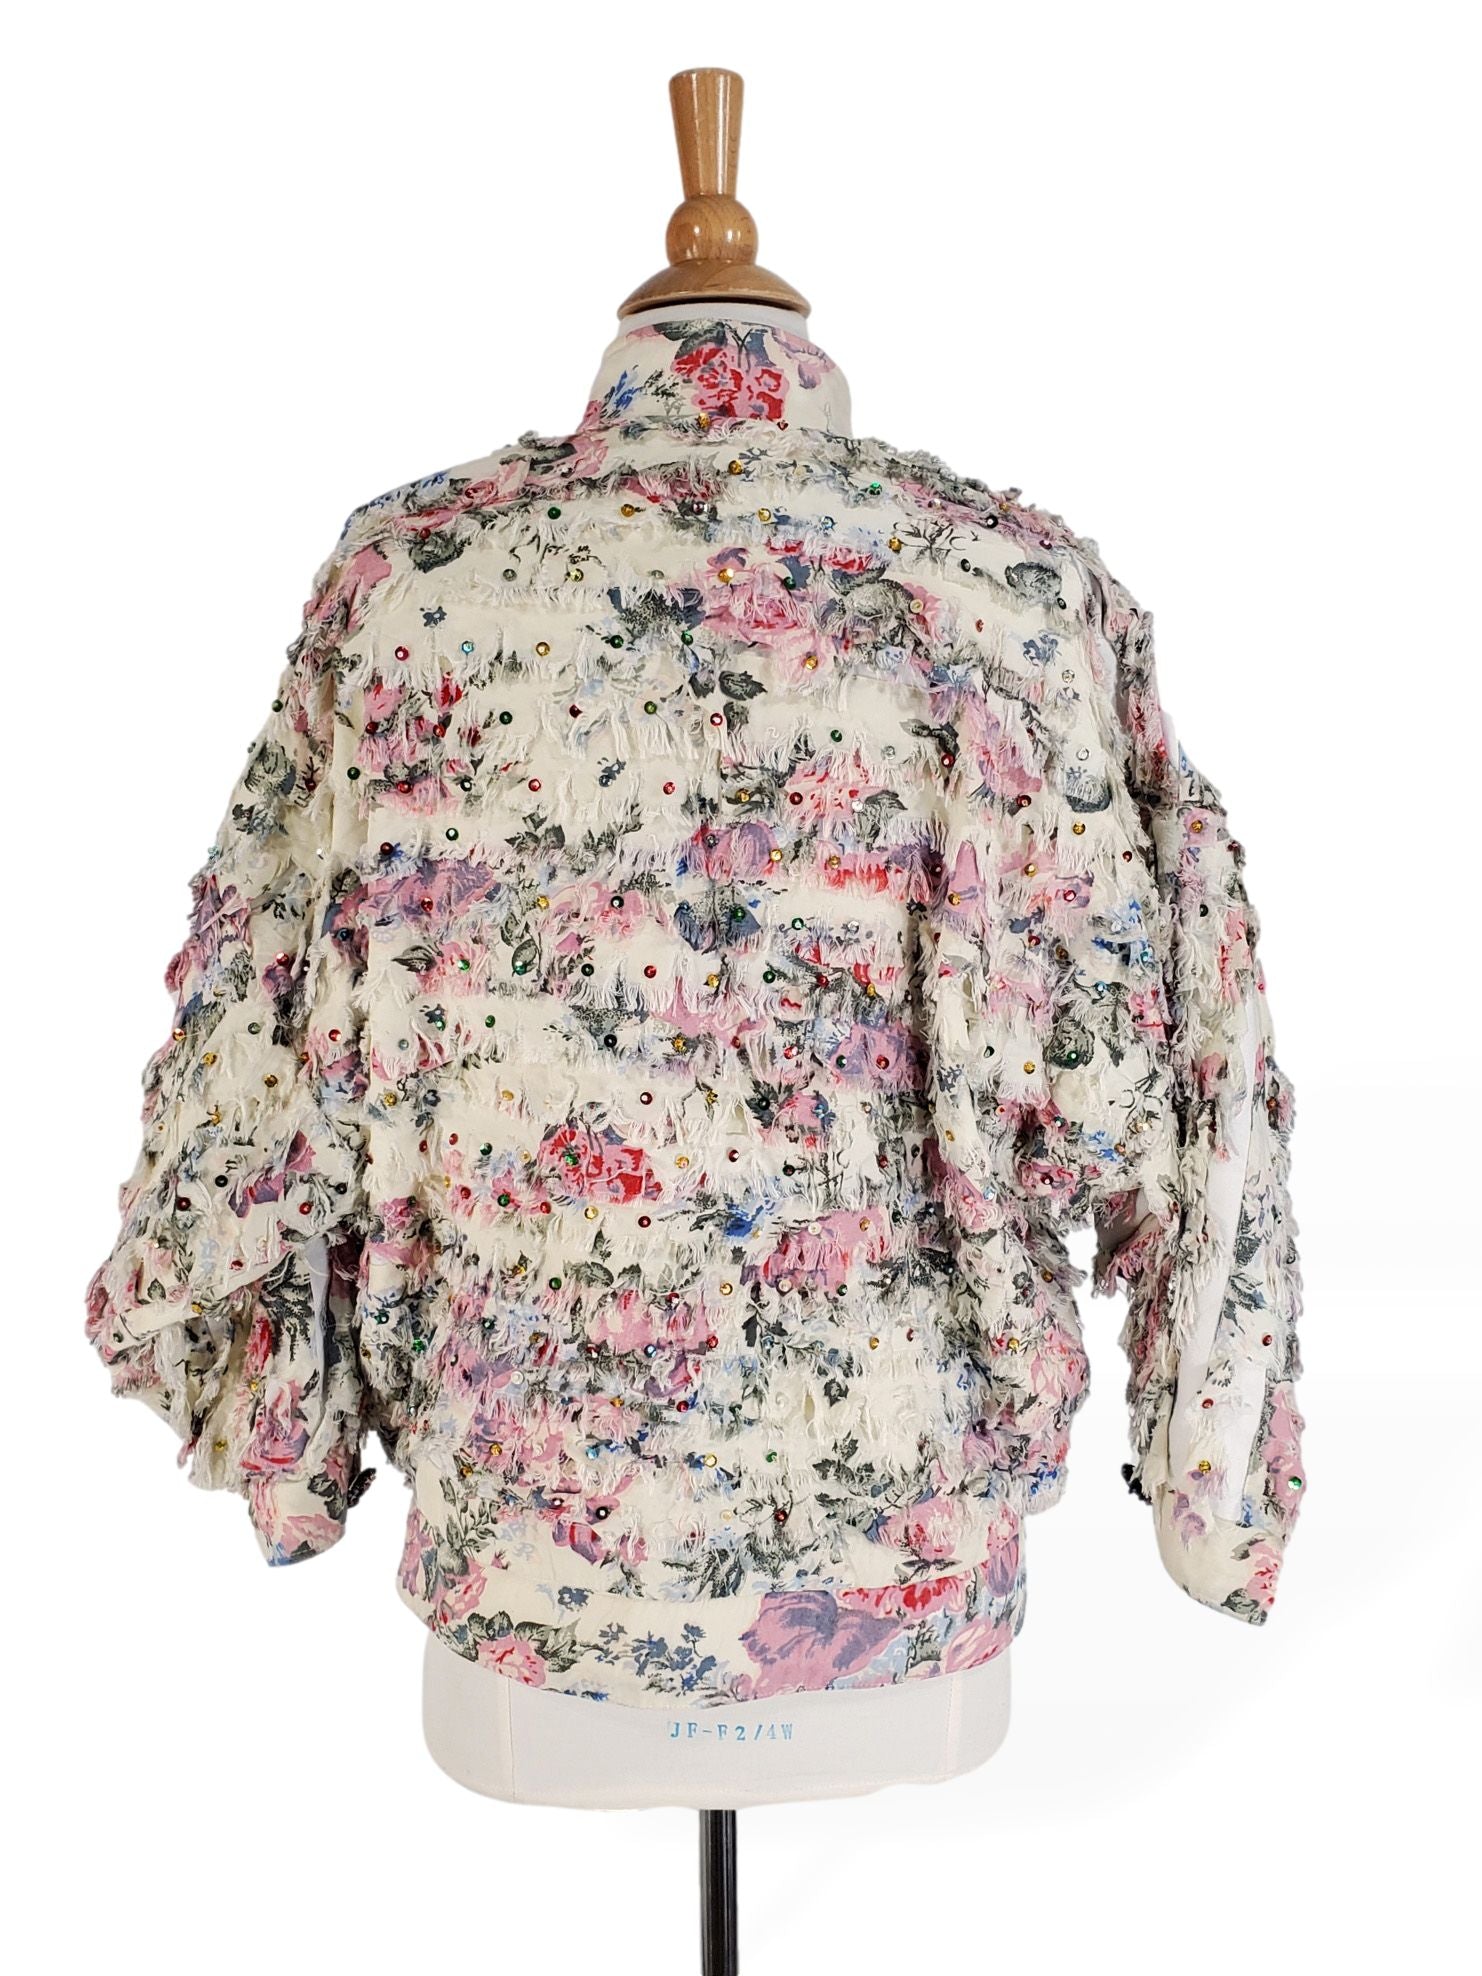 80s Embellished Jacket - sm, med, lg – Better Dresses Vintage